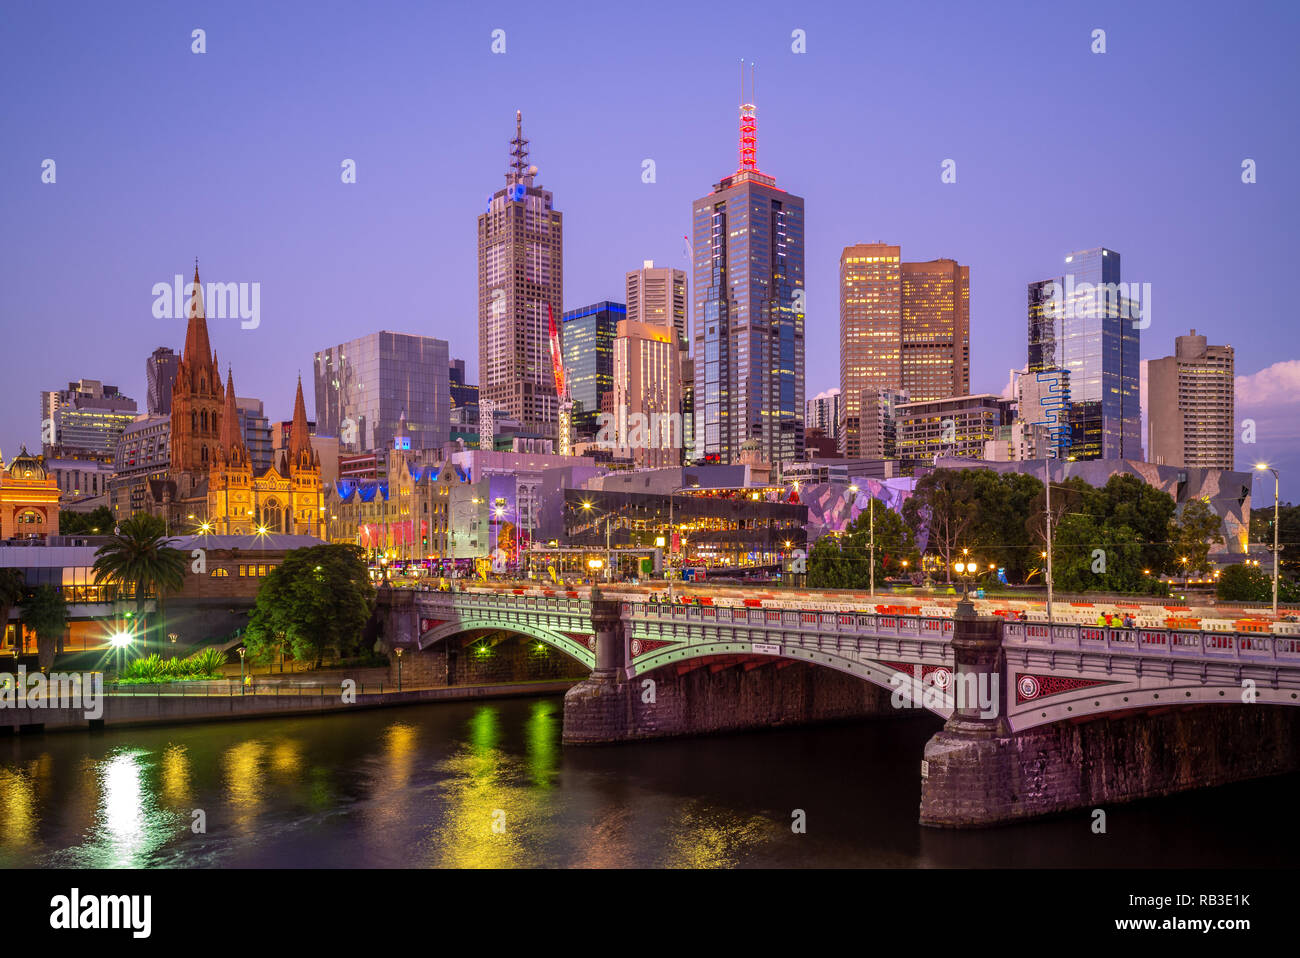 Melbourne City quartier des affaires (CBD), l'Australie Banque D'Images